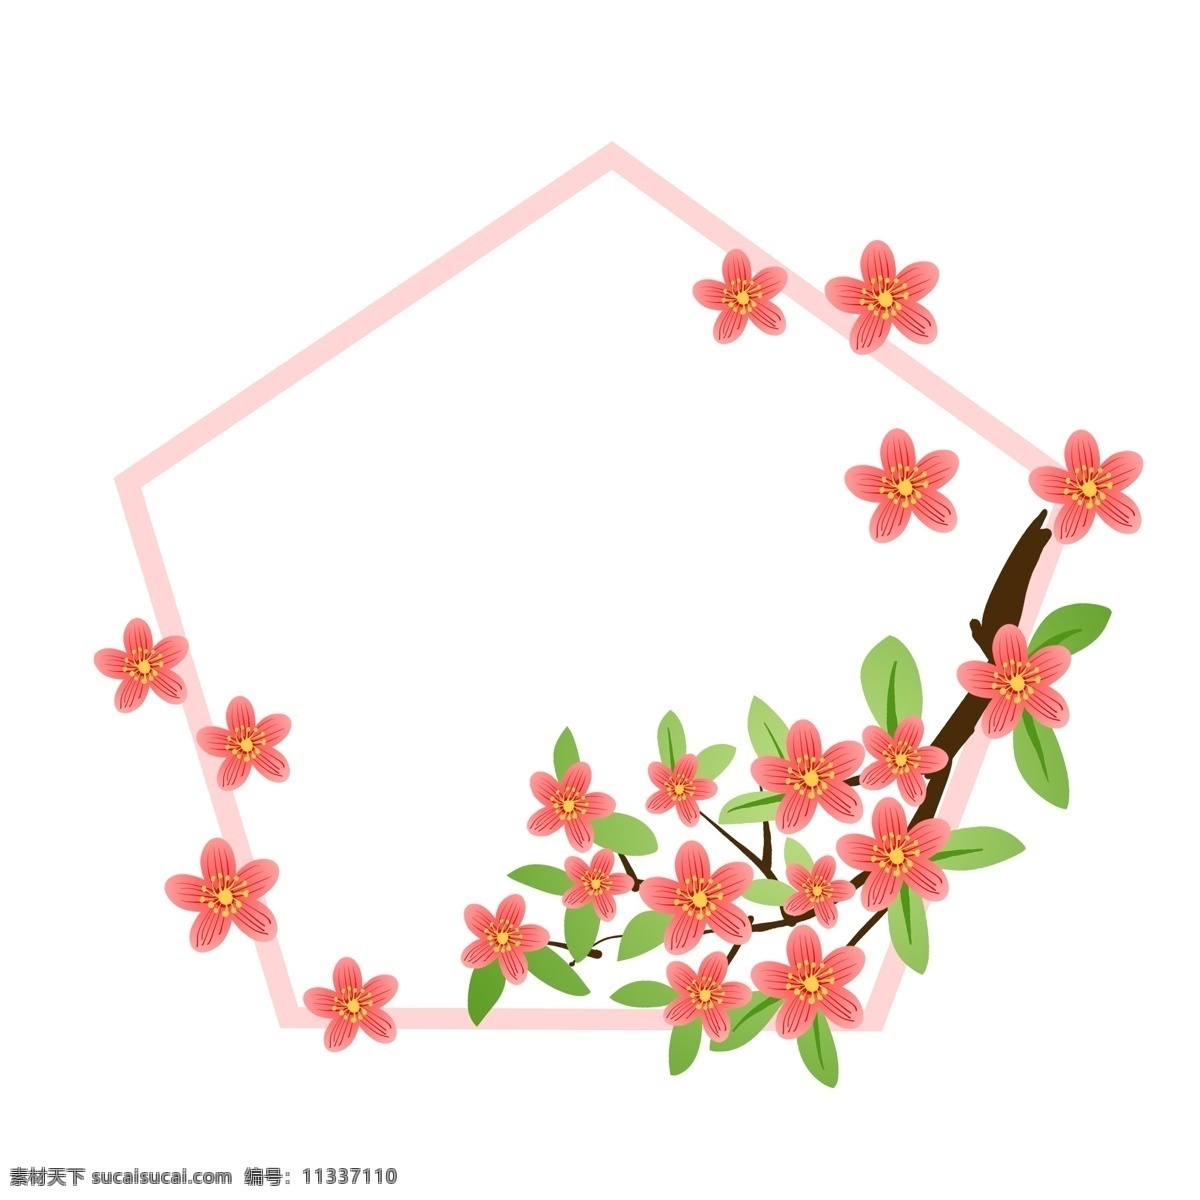 粉色 小花 边框 插画 粉色的边框 小花边框 漂亮的边框 植物边框 多边形边框 立体边框 精美的边框